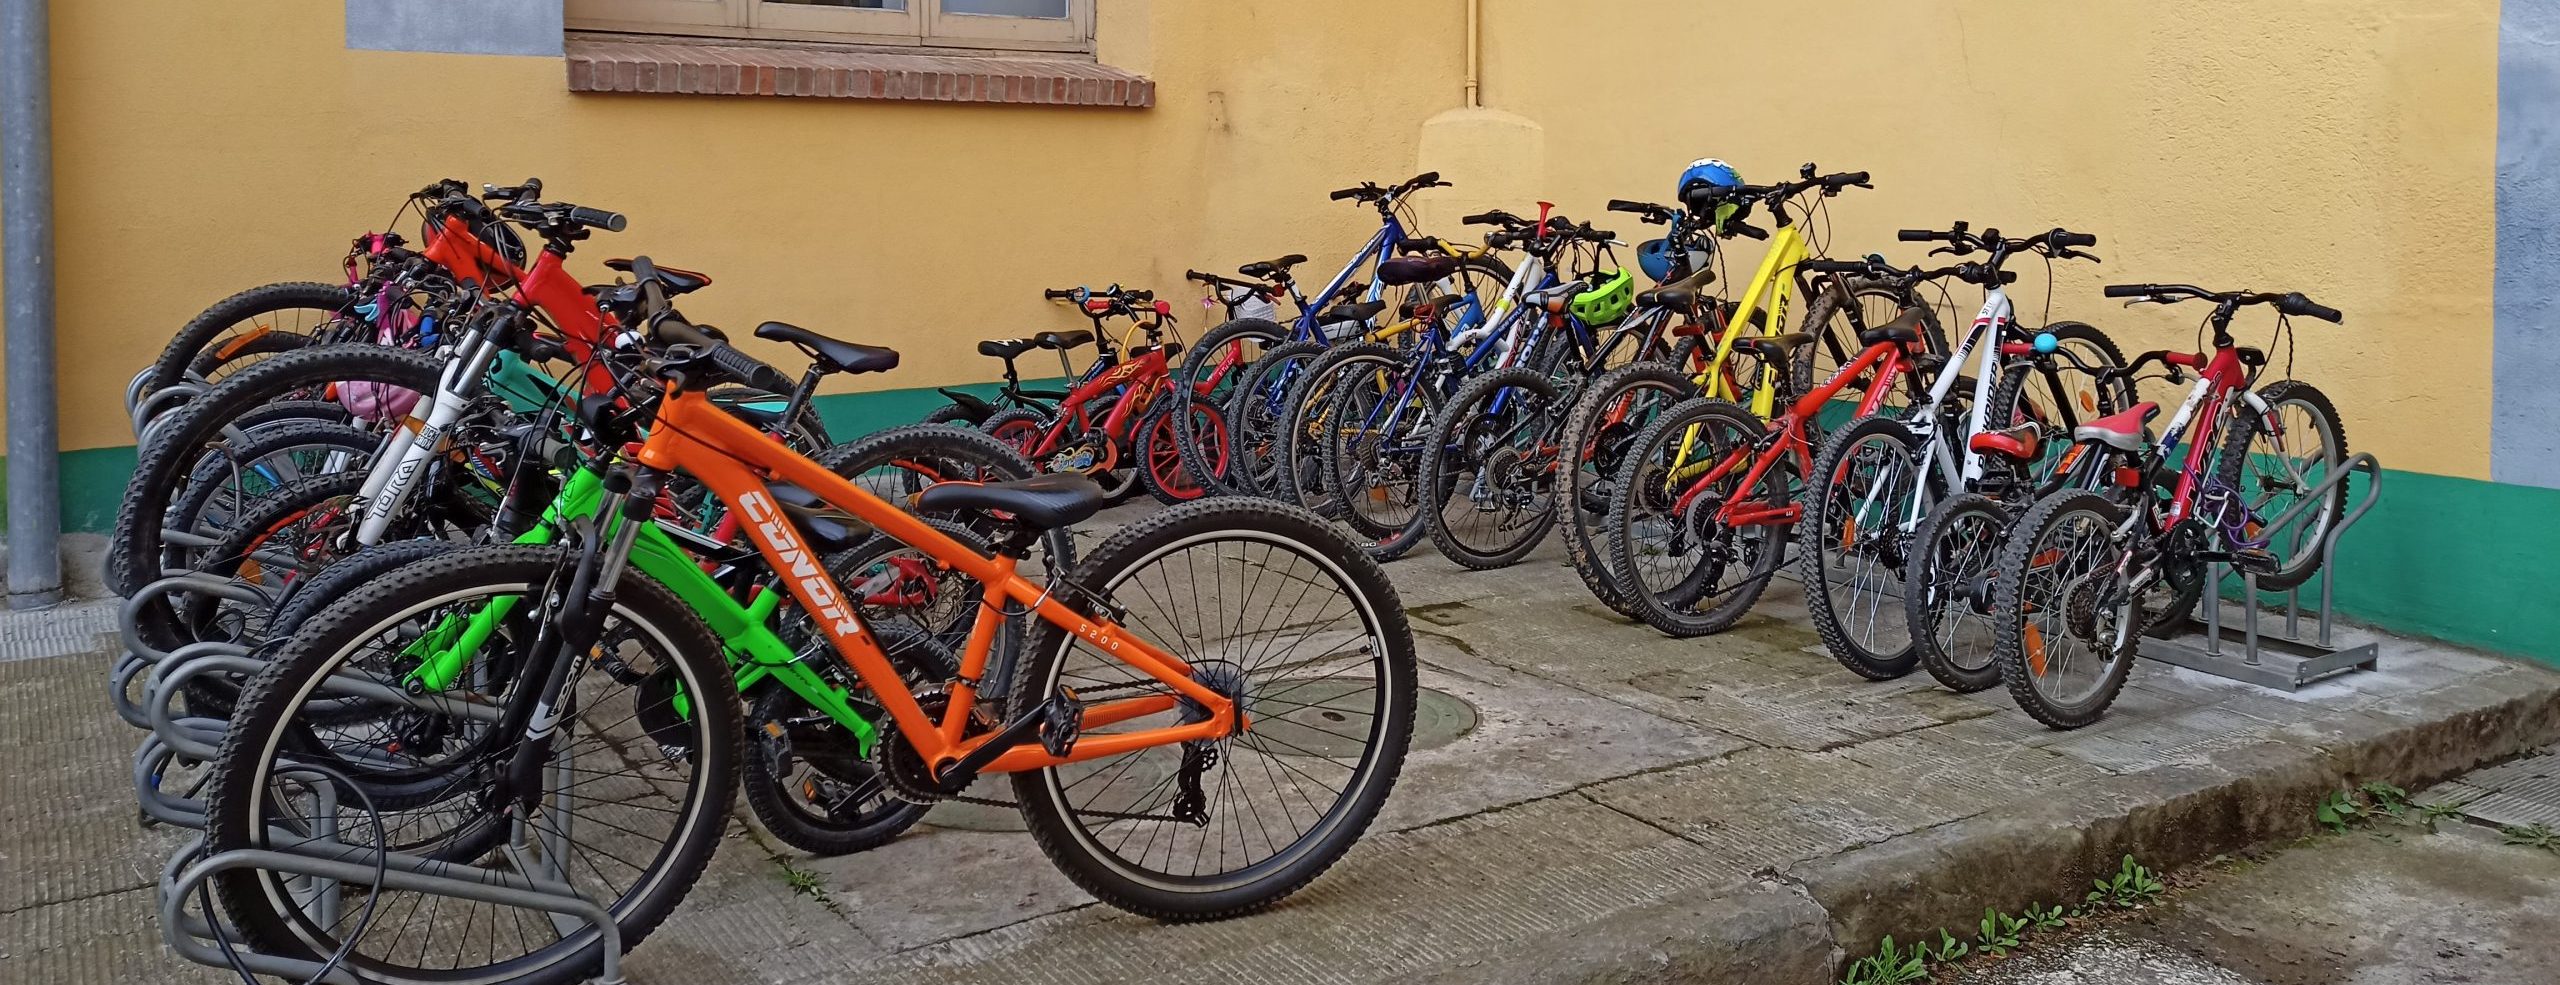 Aparcamiento de bicicletas dentro de una escuela lleno de bicis gracias al bicibús.